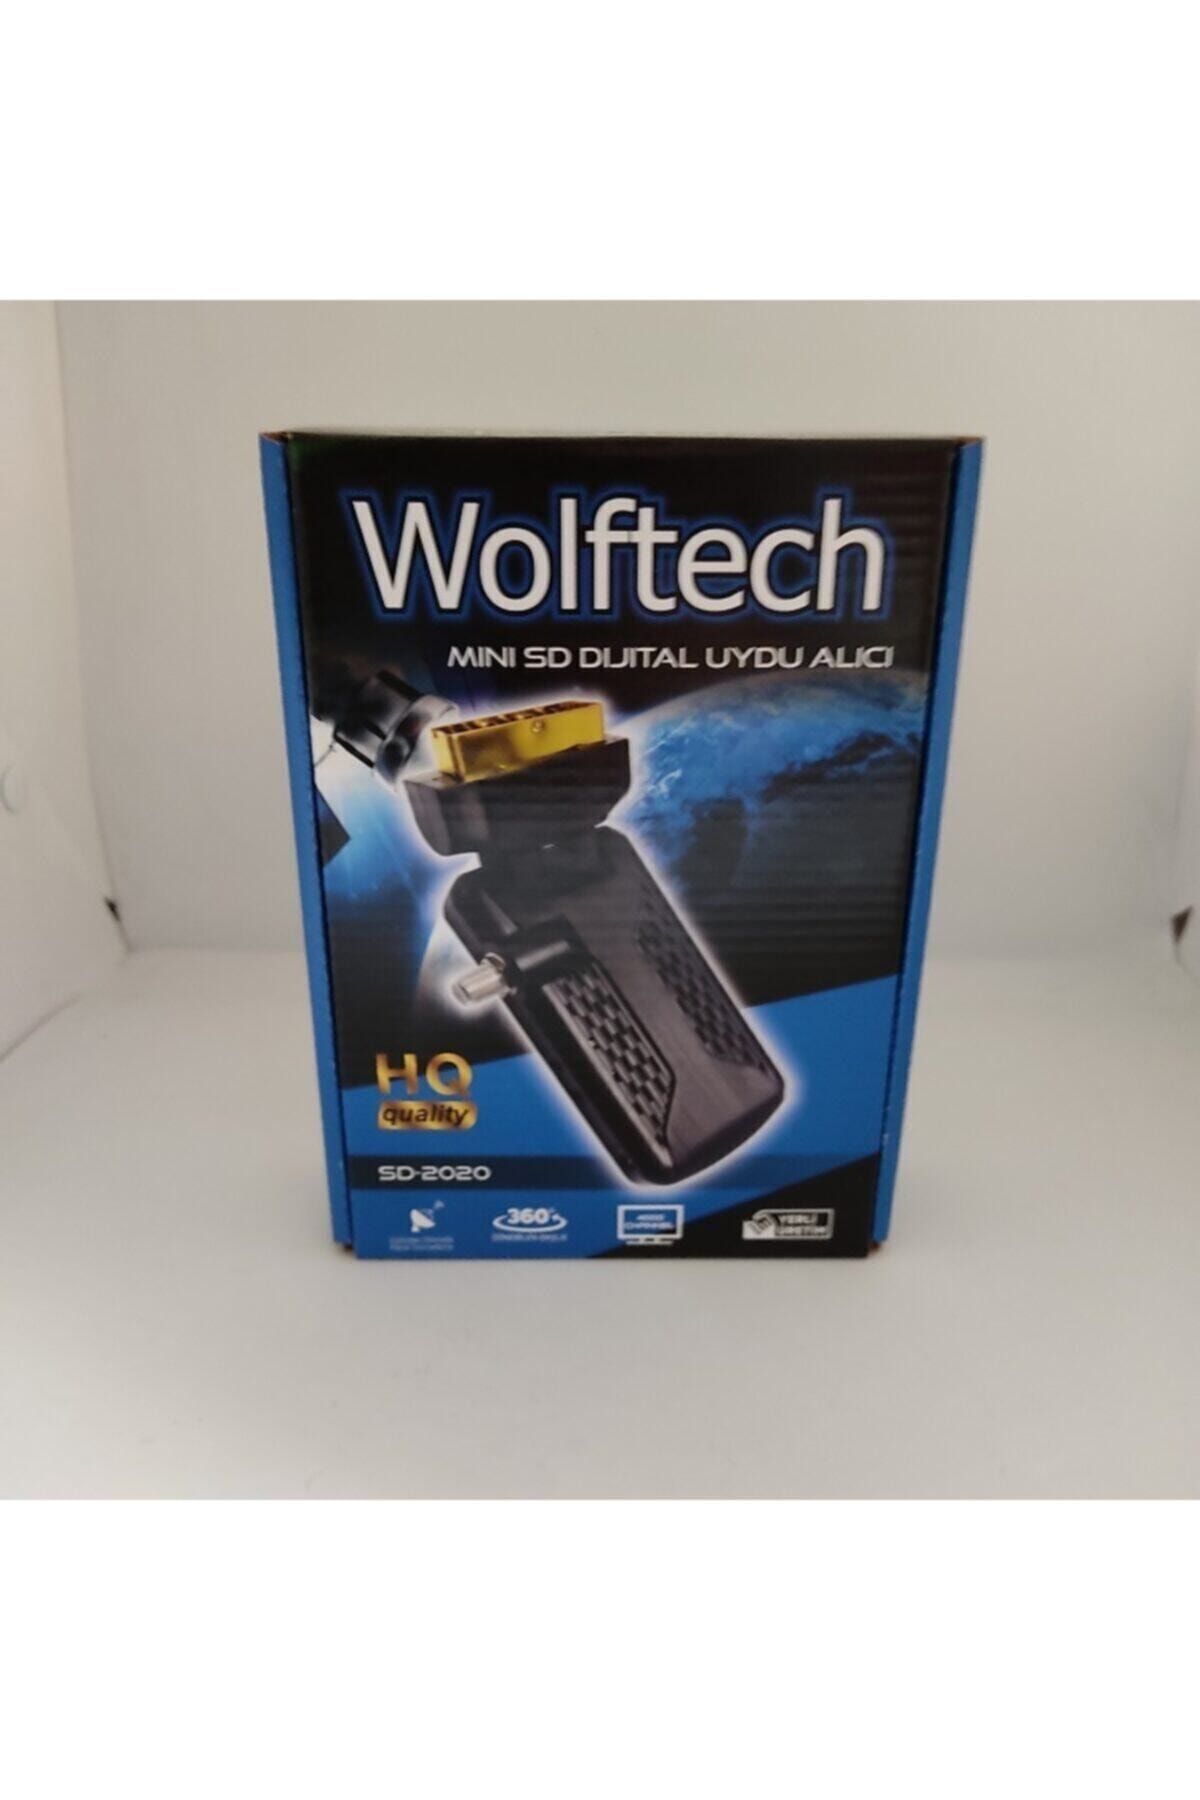 wolftech Mini Sd Dijital Uydu Alıcı